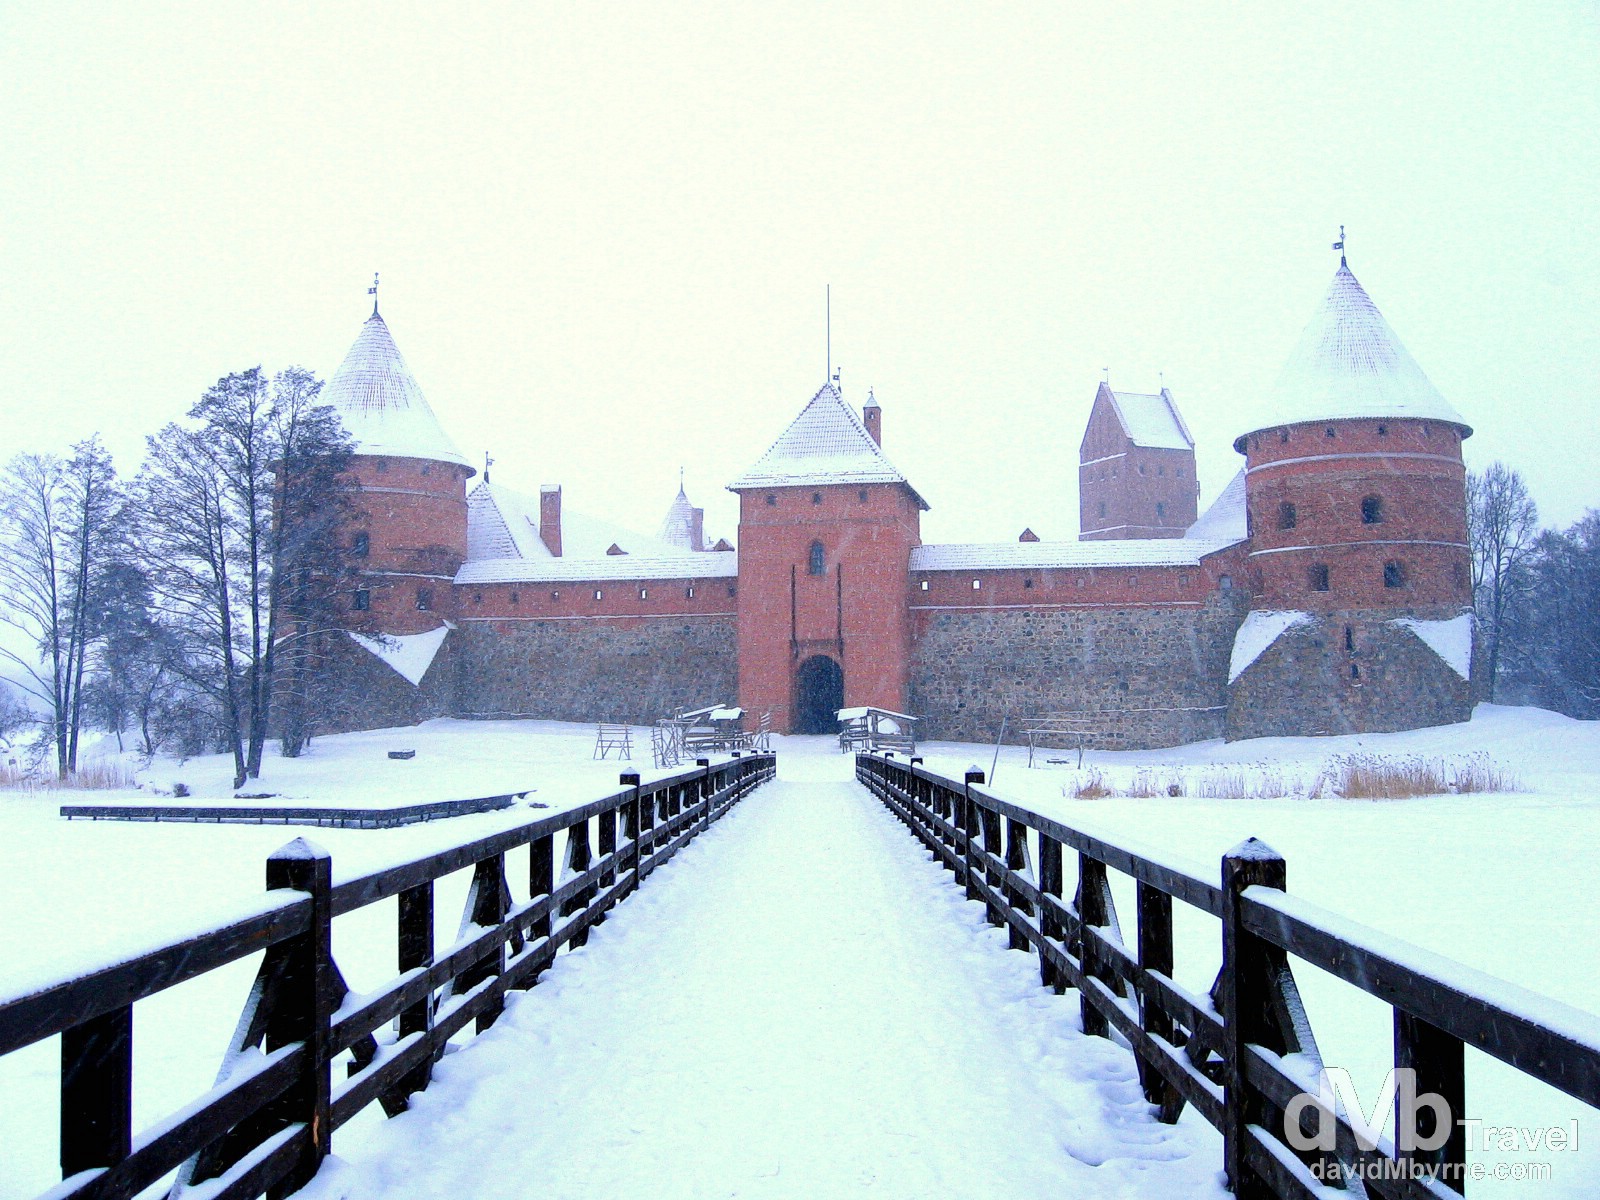 Trakai Castle, Trakai, Lithuania. March 4, 2006.